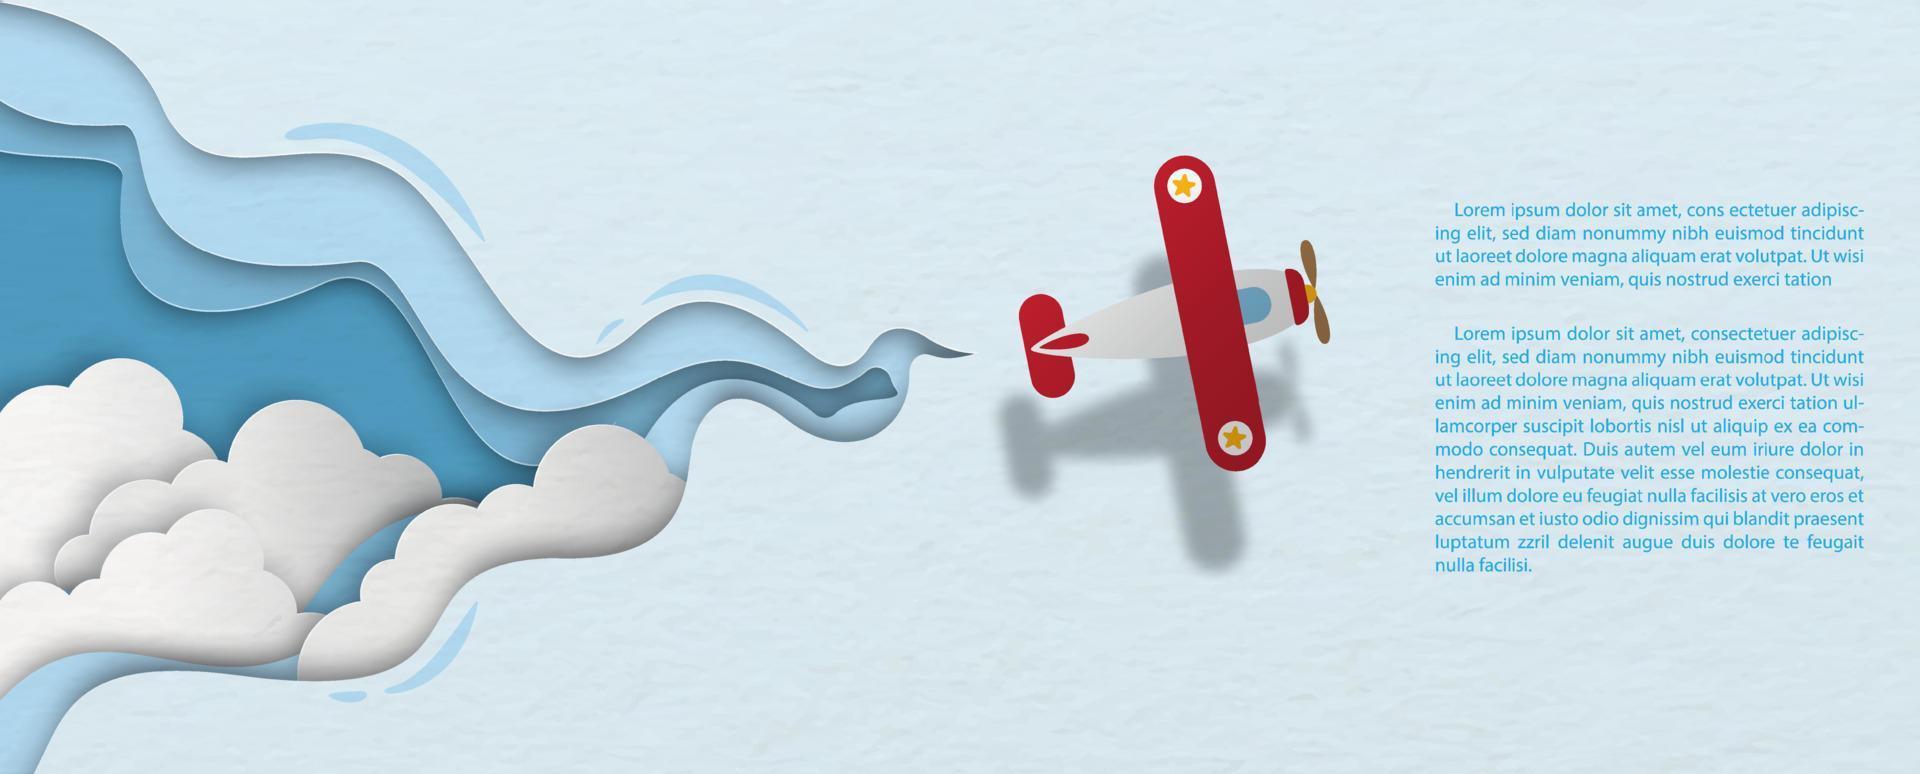 gruppo di nuvole bianche cielo in un modello astratto con aereo a elica che vola e testi di esempio su carta blu sullo sfondo del modello. banner web in stile taglio carta e design vettoriale. vettore